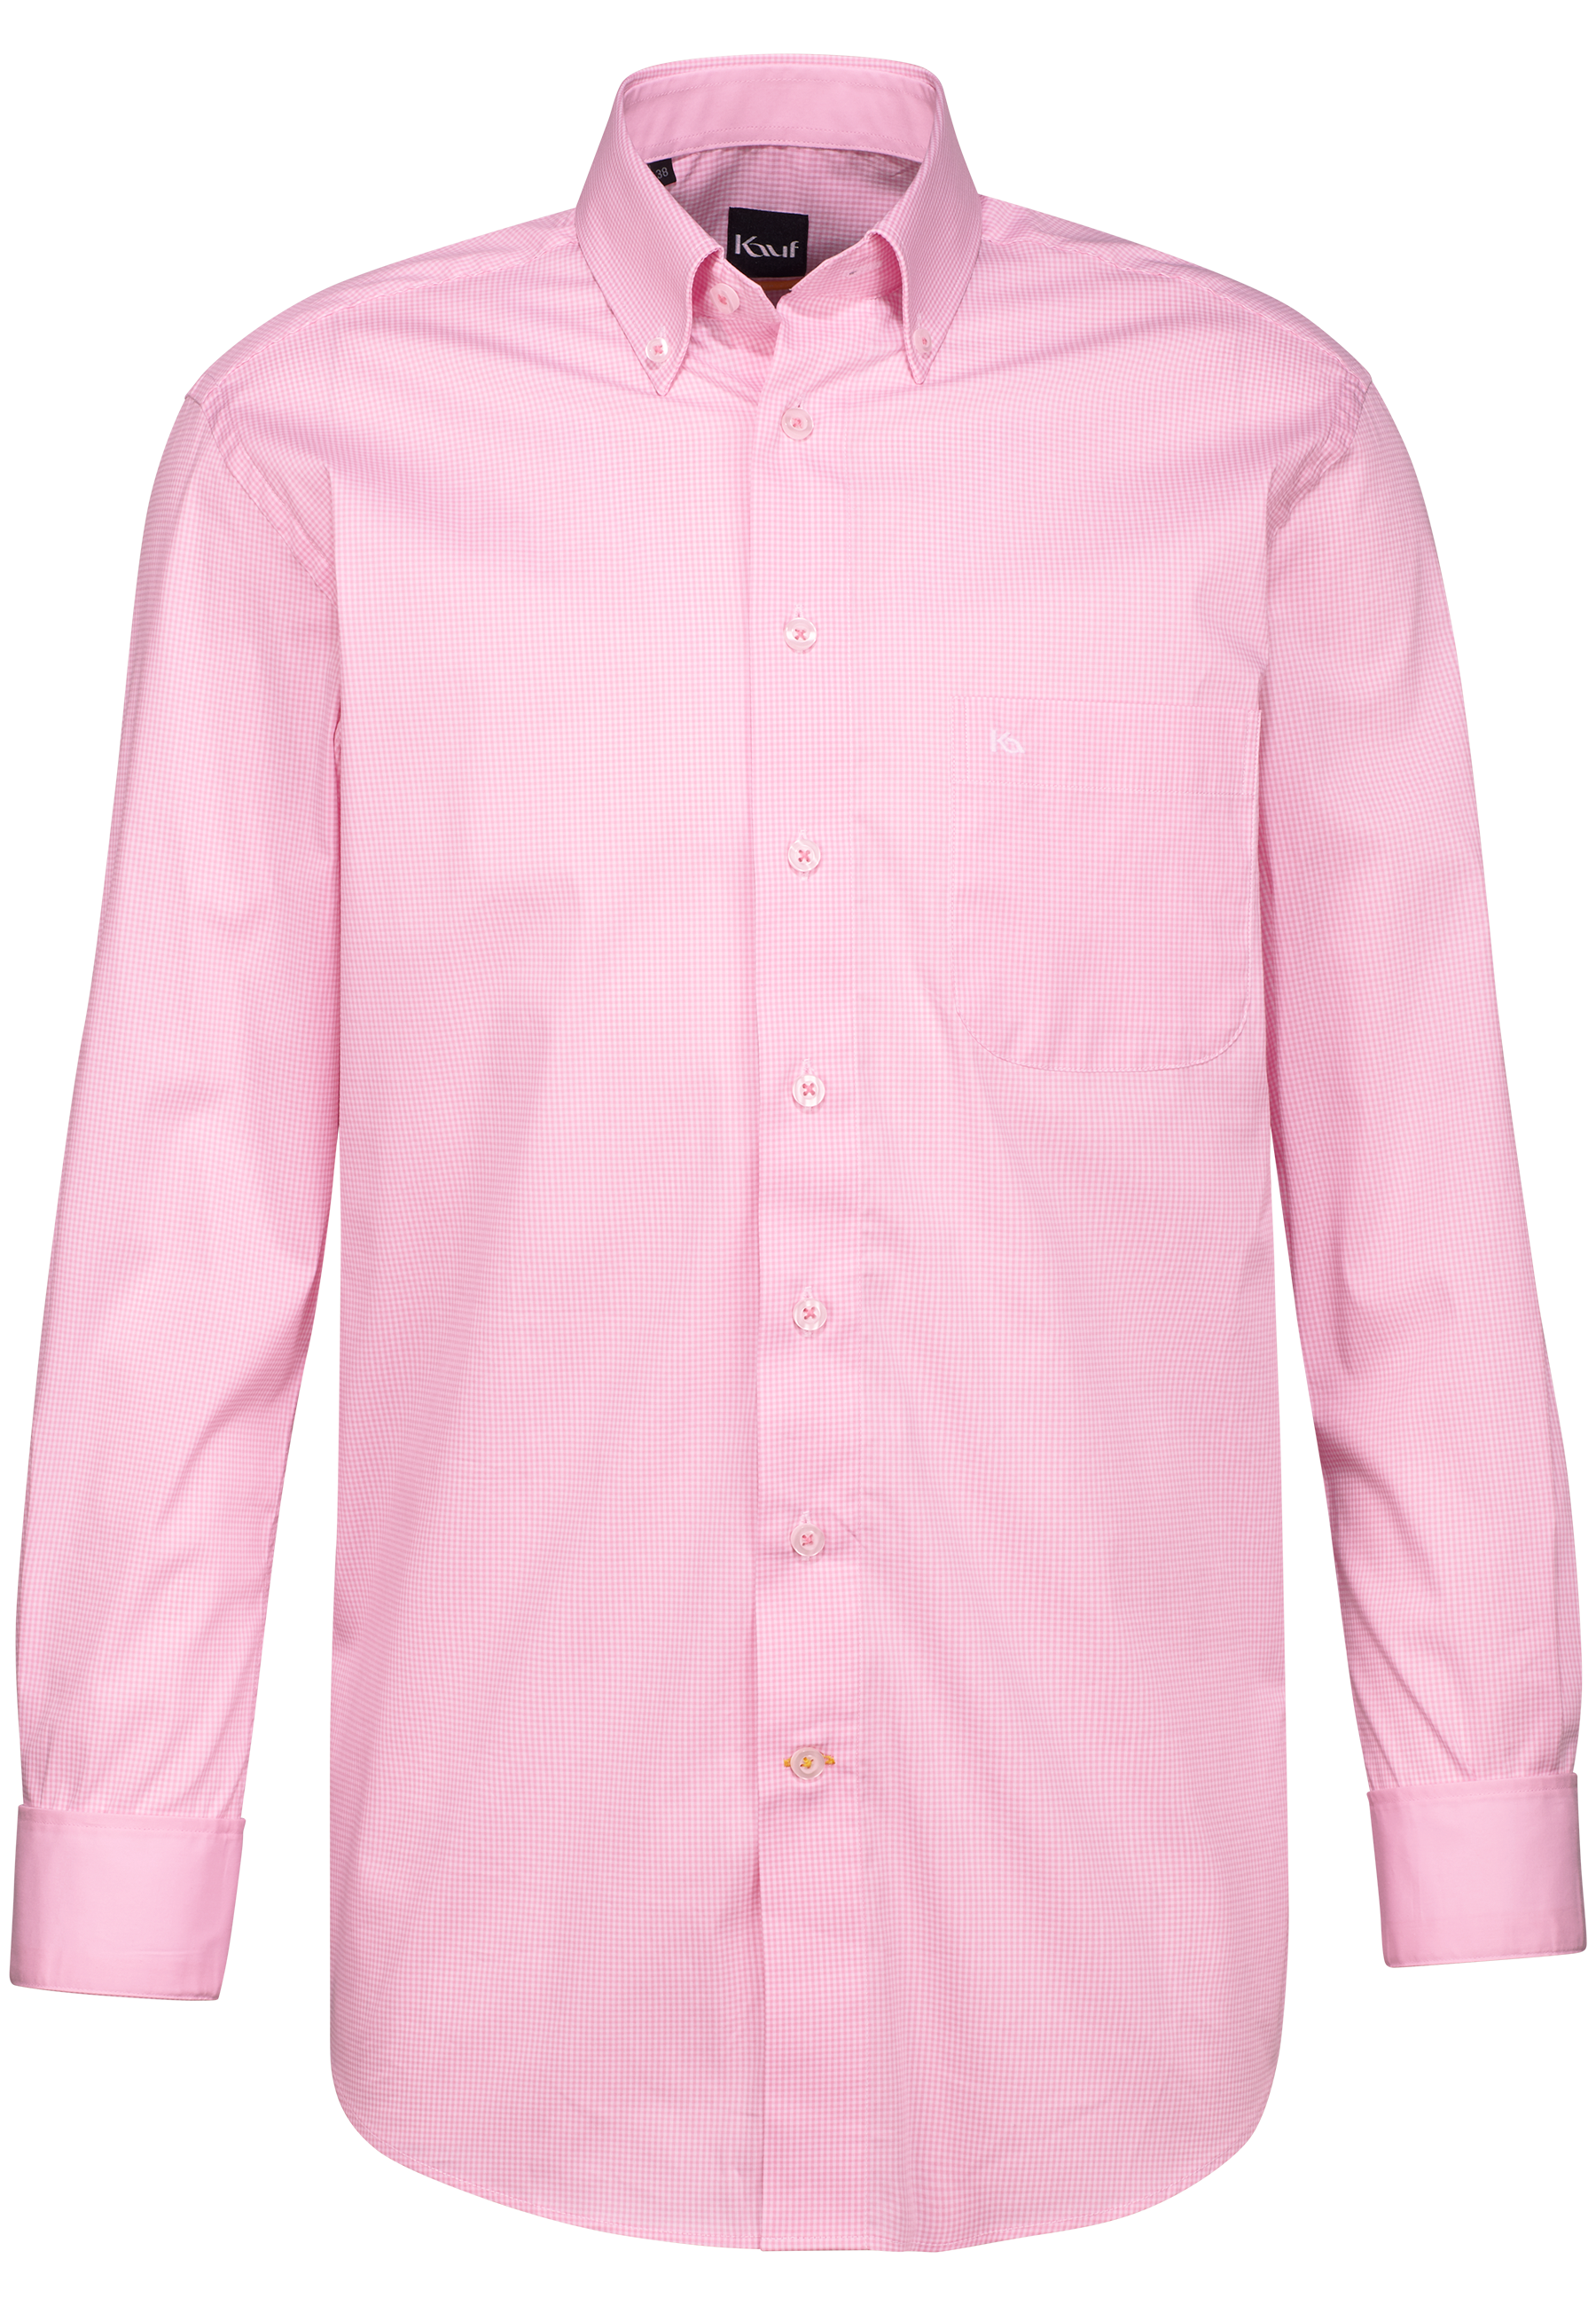 hemd rosa gemustert